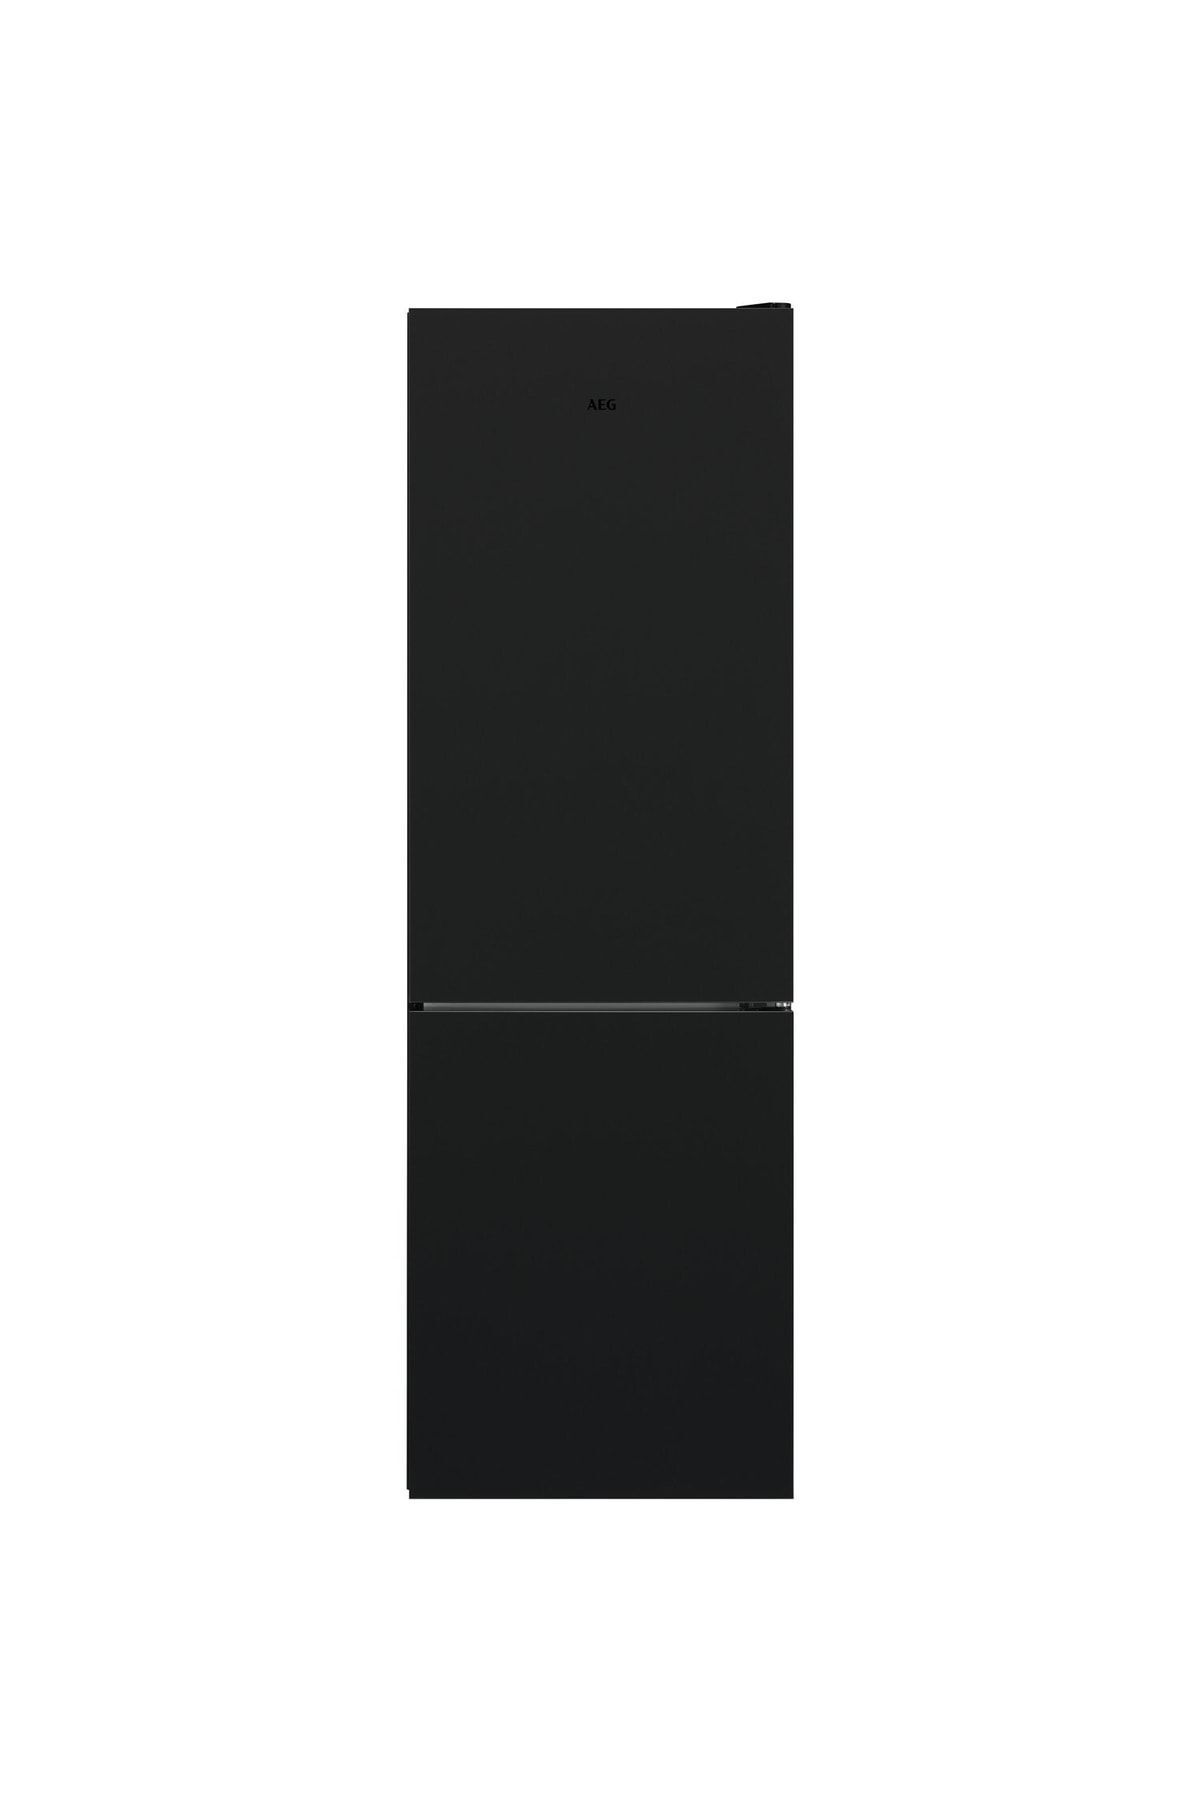 VESTEL 380lt / 186cm Siyah No-frost Buzdolabı